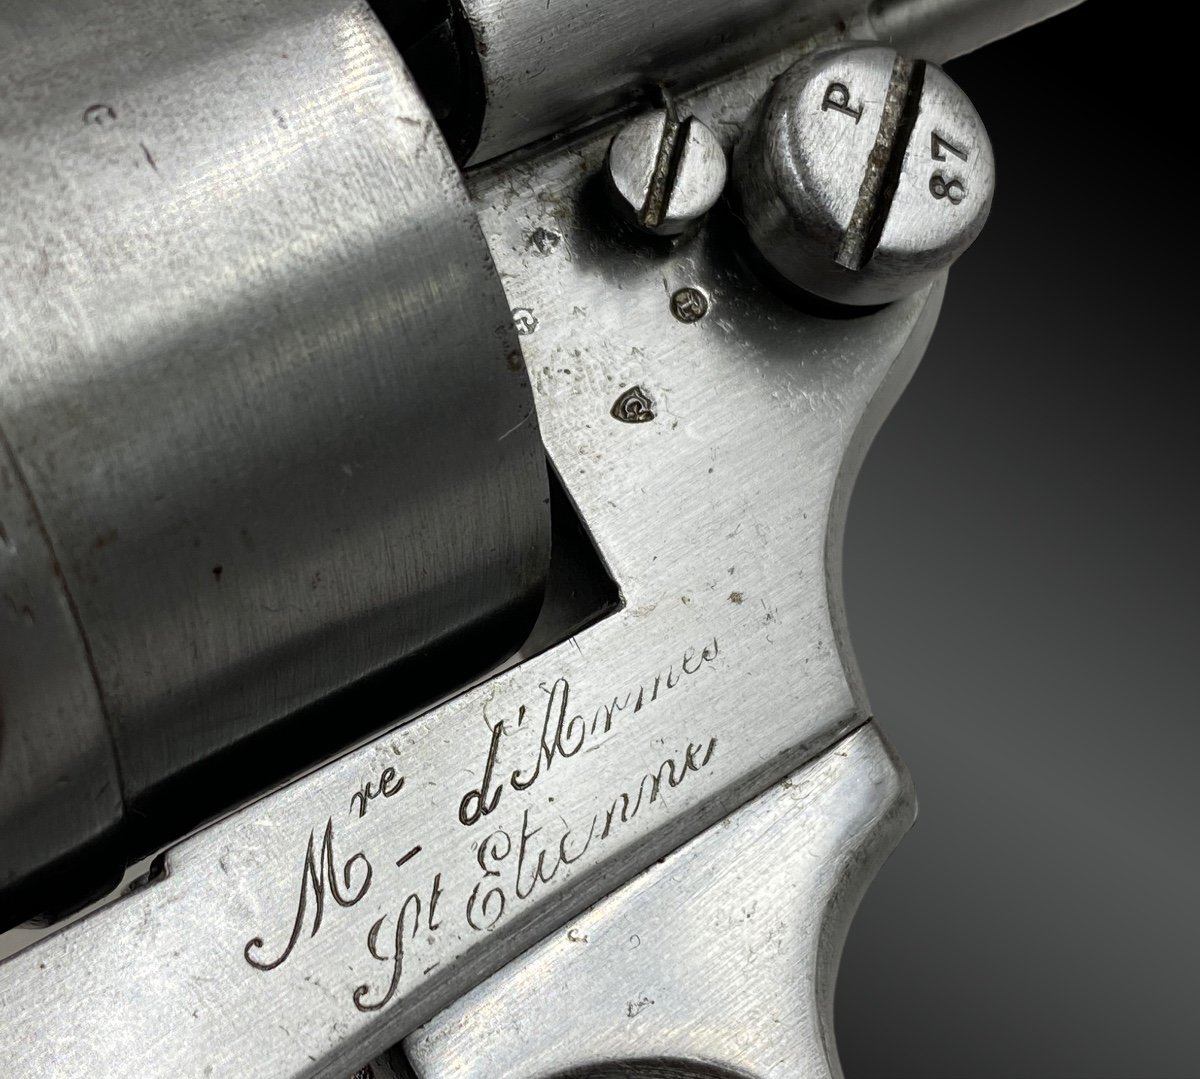 Navy Model 1873 Regulatory Revolver.-photo-3